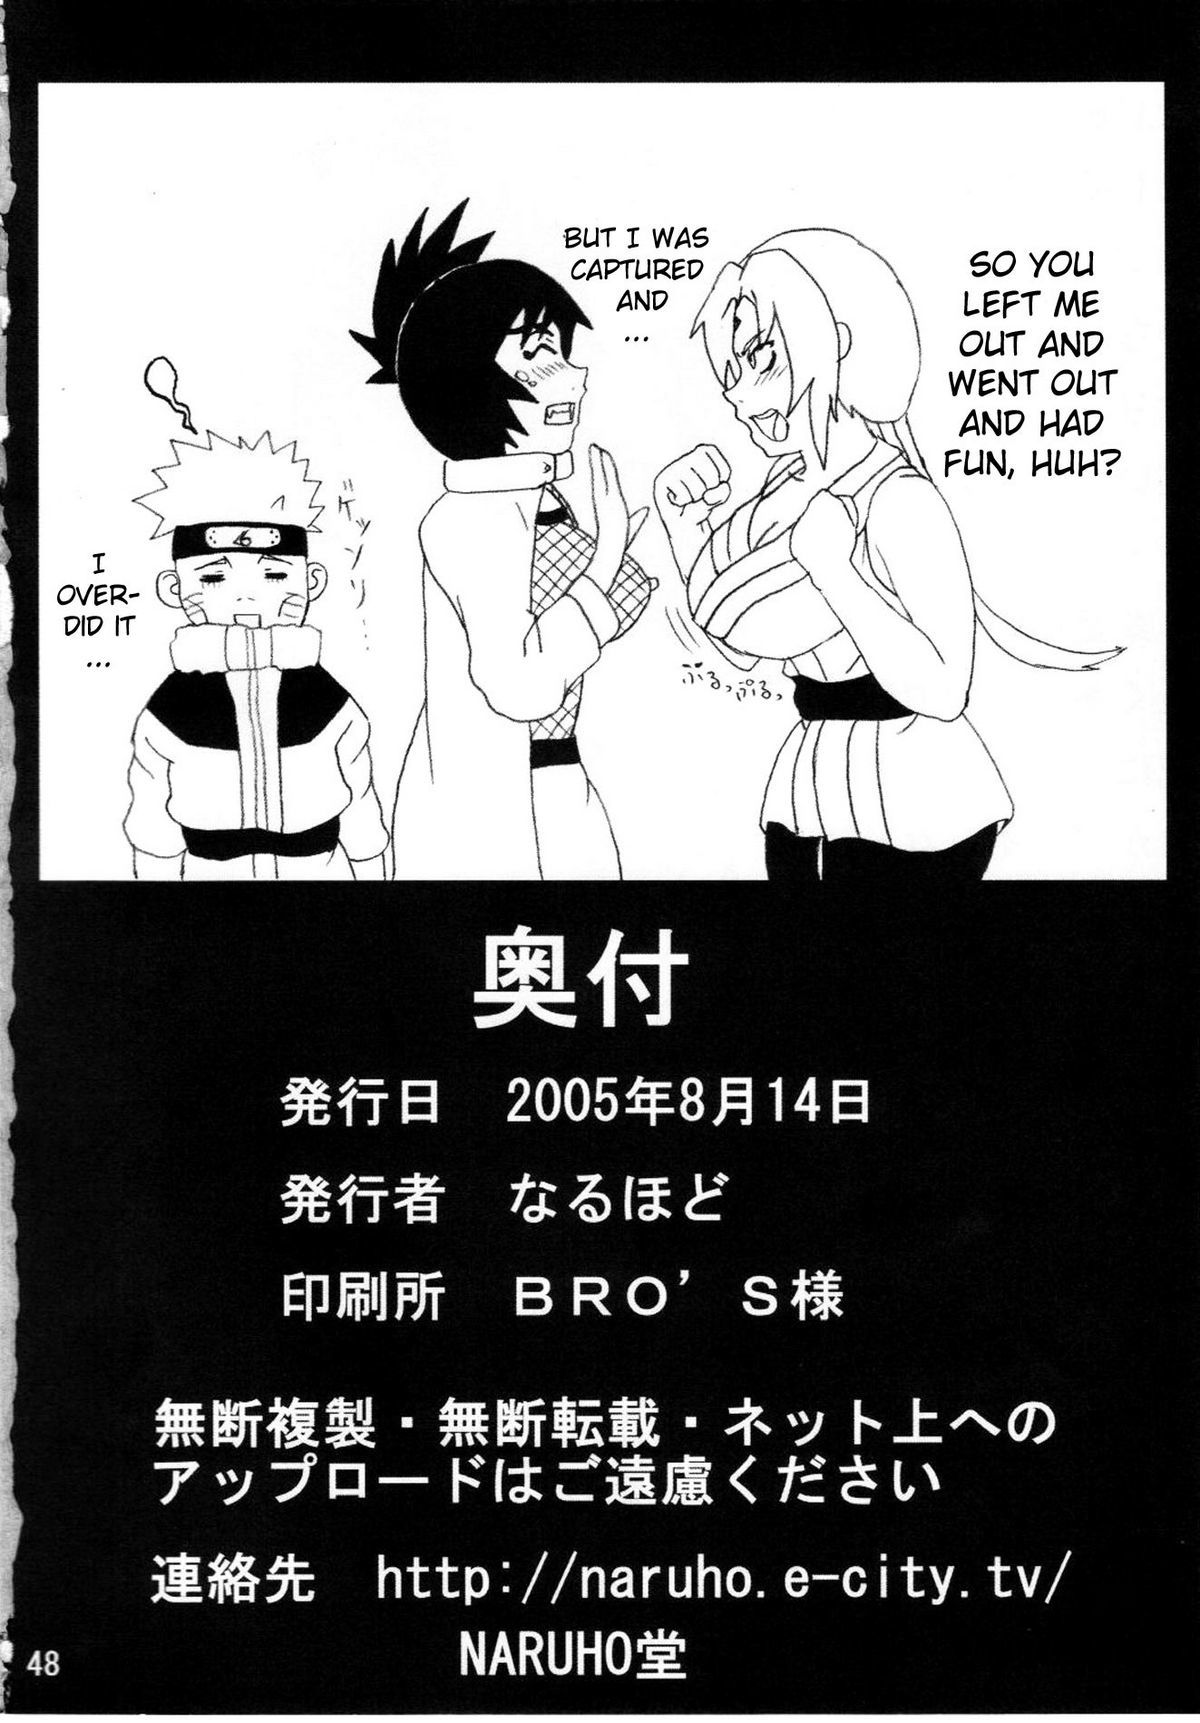 Mitarashi Anko Hon naruto 48 hentai manga